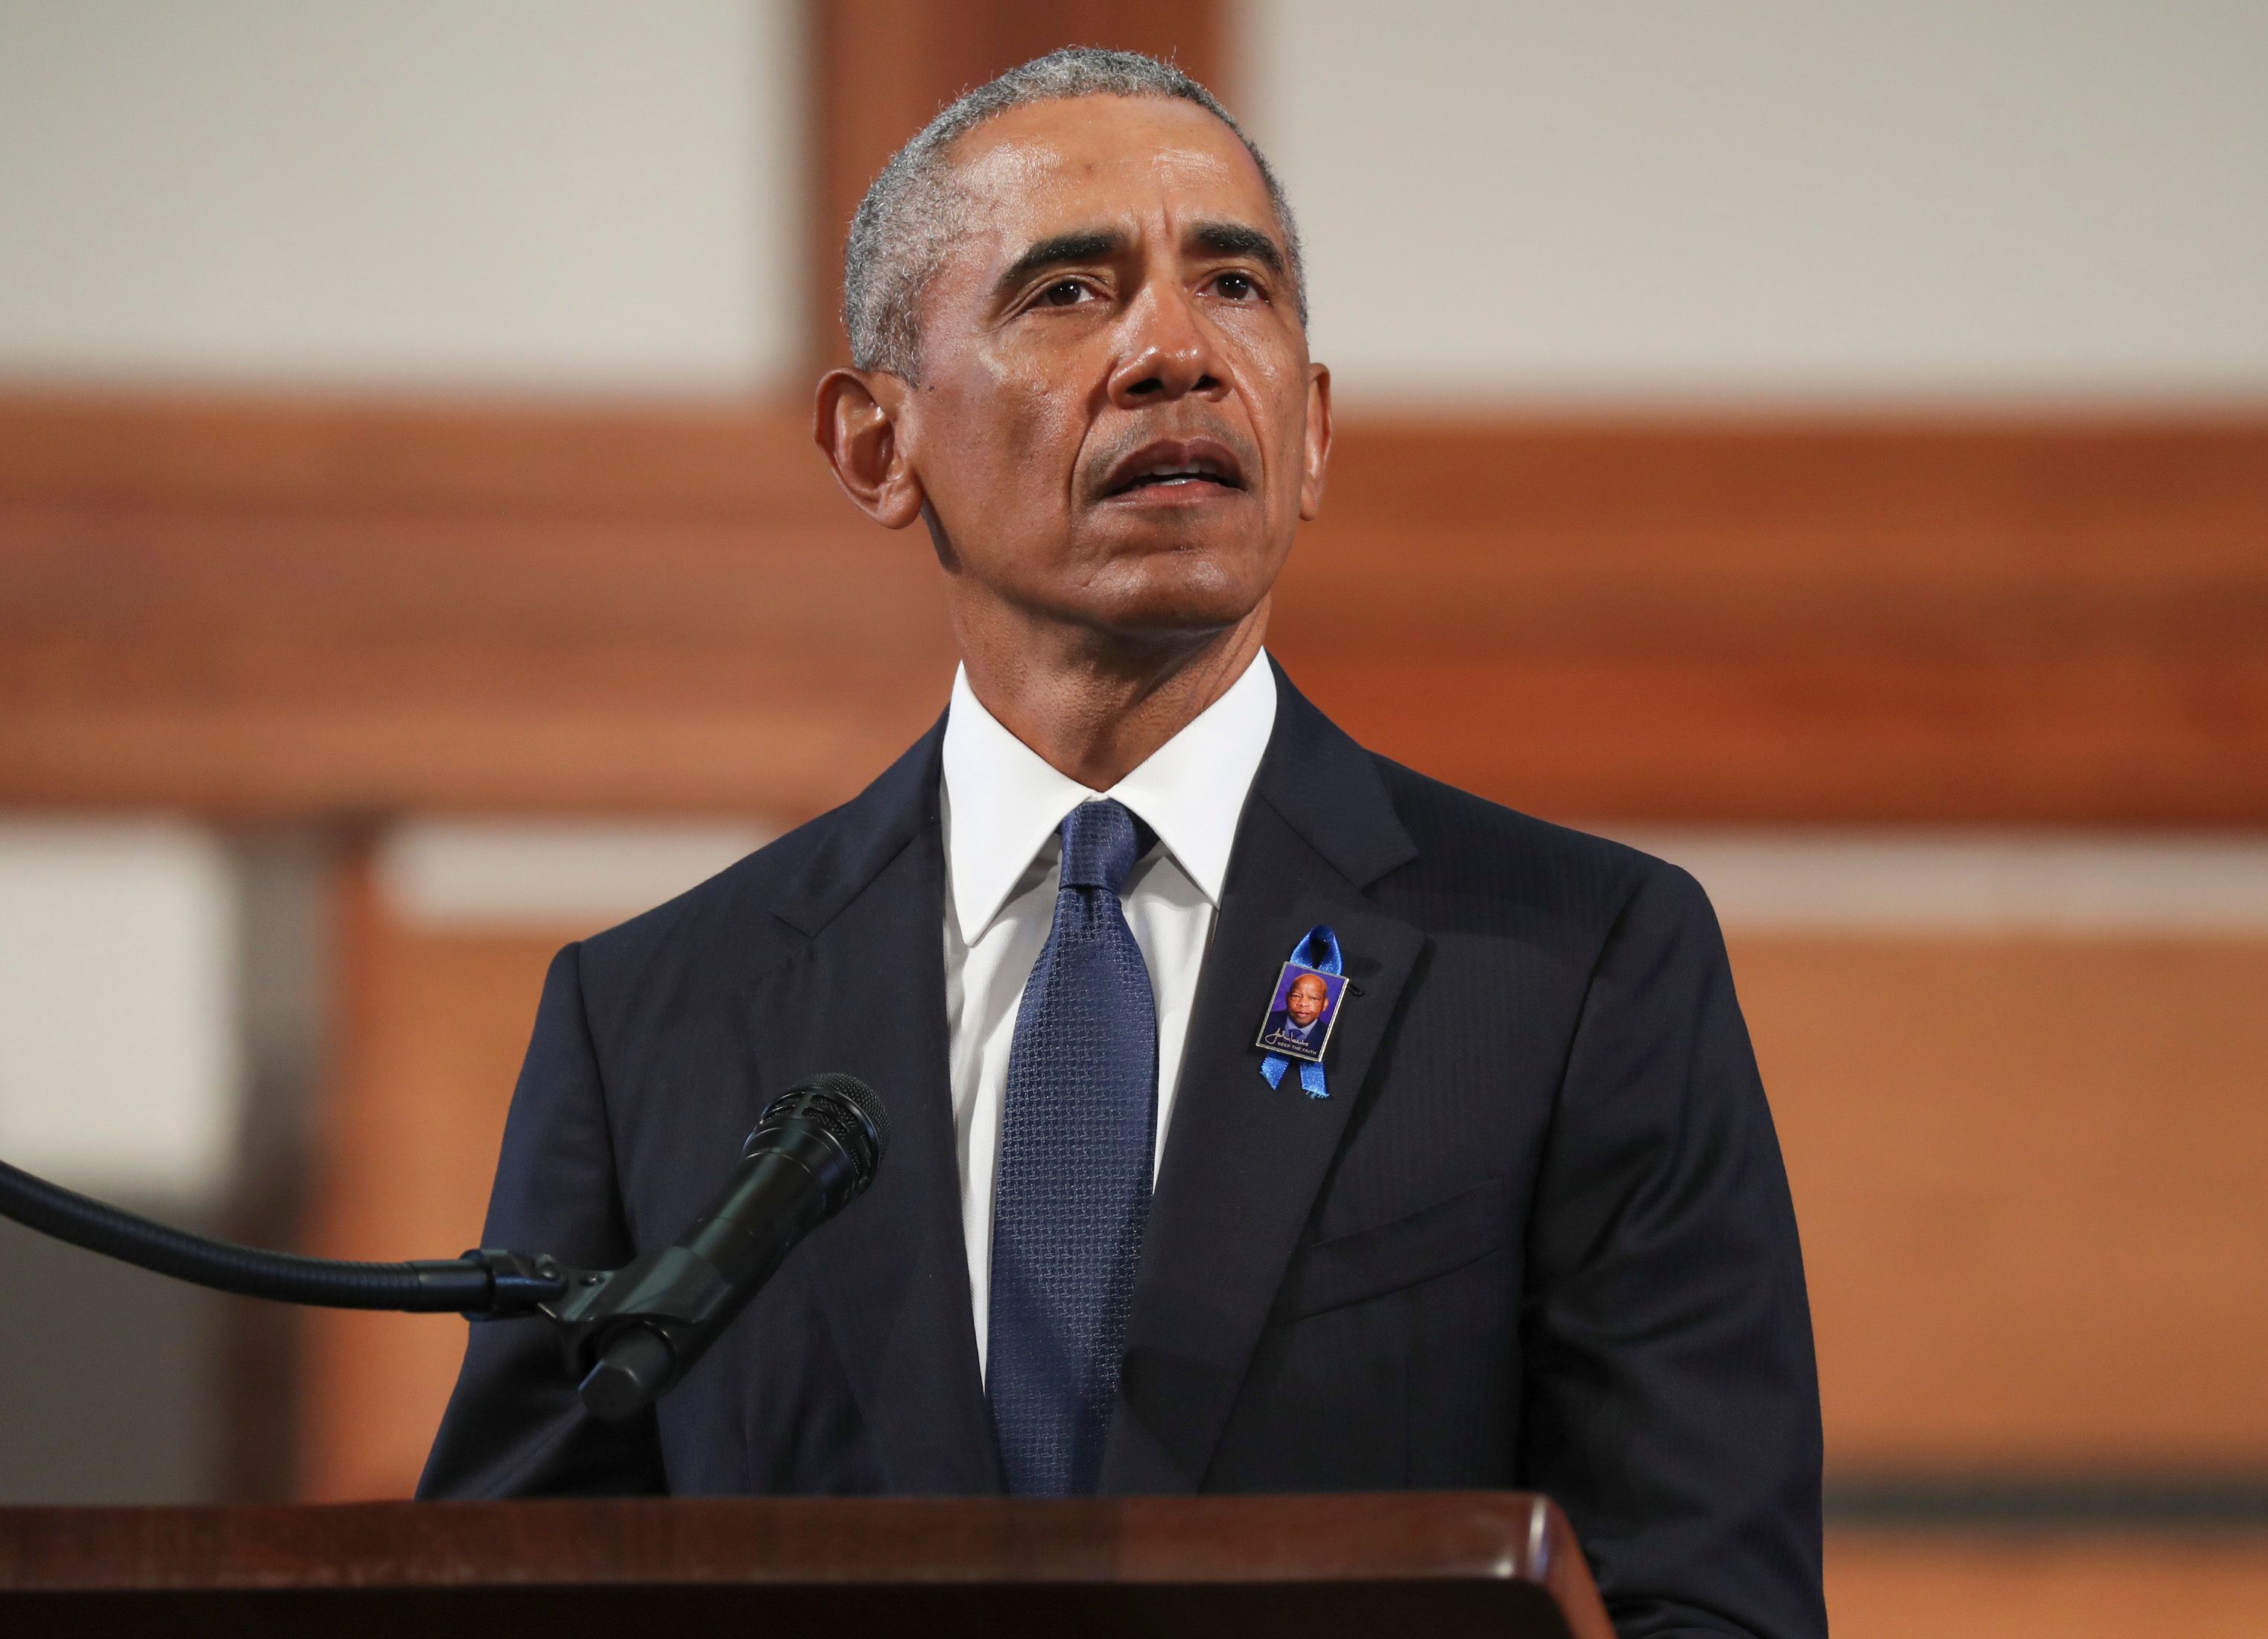 Barack Obama speaks at an event.